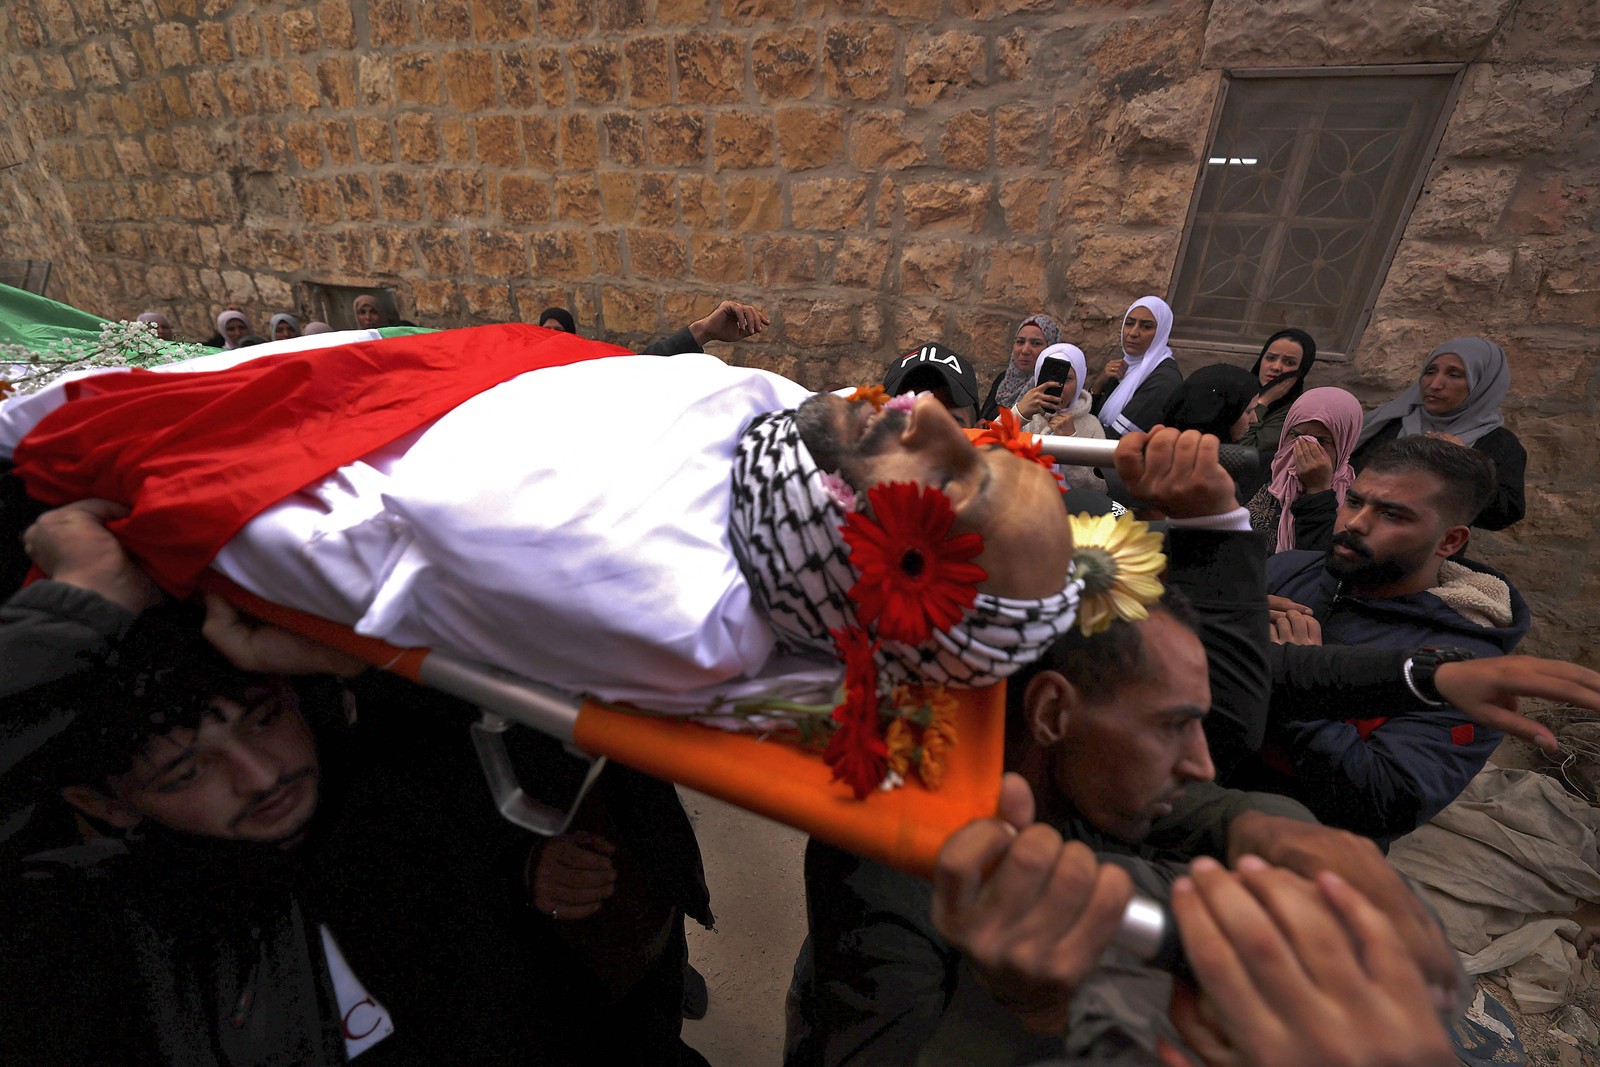 Enlutados carregam o corpo de homem palestino durante confrontos com as forças israelenses na vila de Beit Duquu, a noroeste de Jerusalém. — Foto: ABBAS MOMANI / AFP